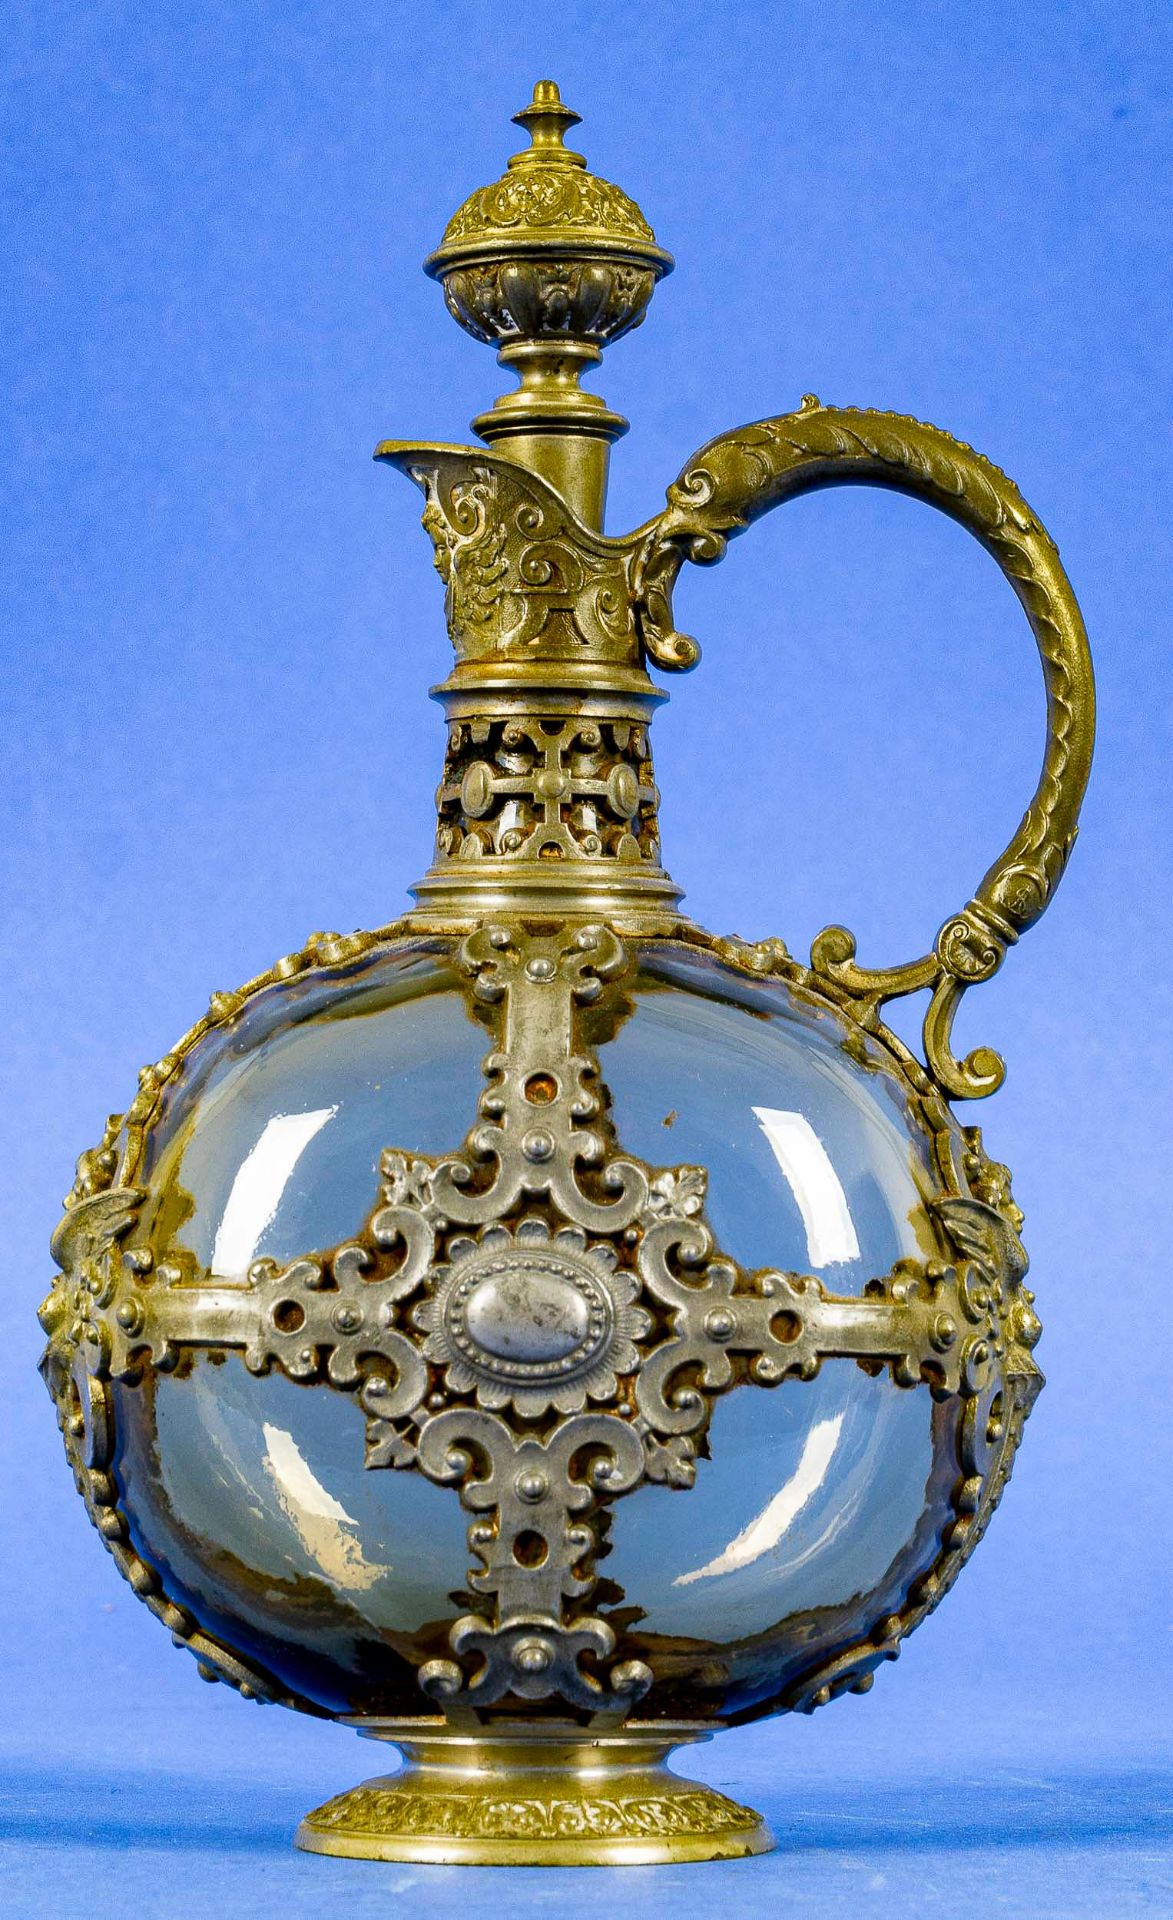 Kleine Karaffe für Likör o. ä., gelbliches Glas mit aufwändiger Zinnmontur, Historismus um 1900. Hö - Image 2 of 6